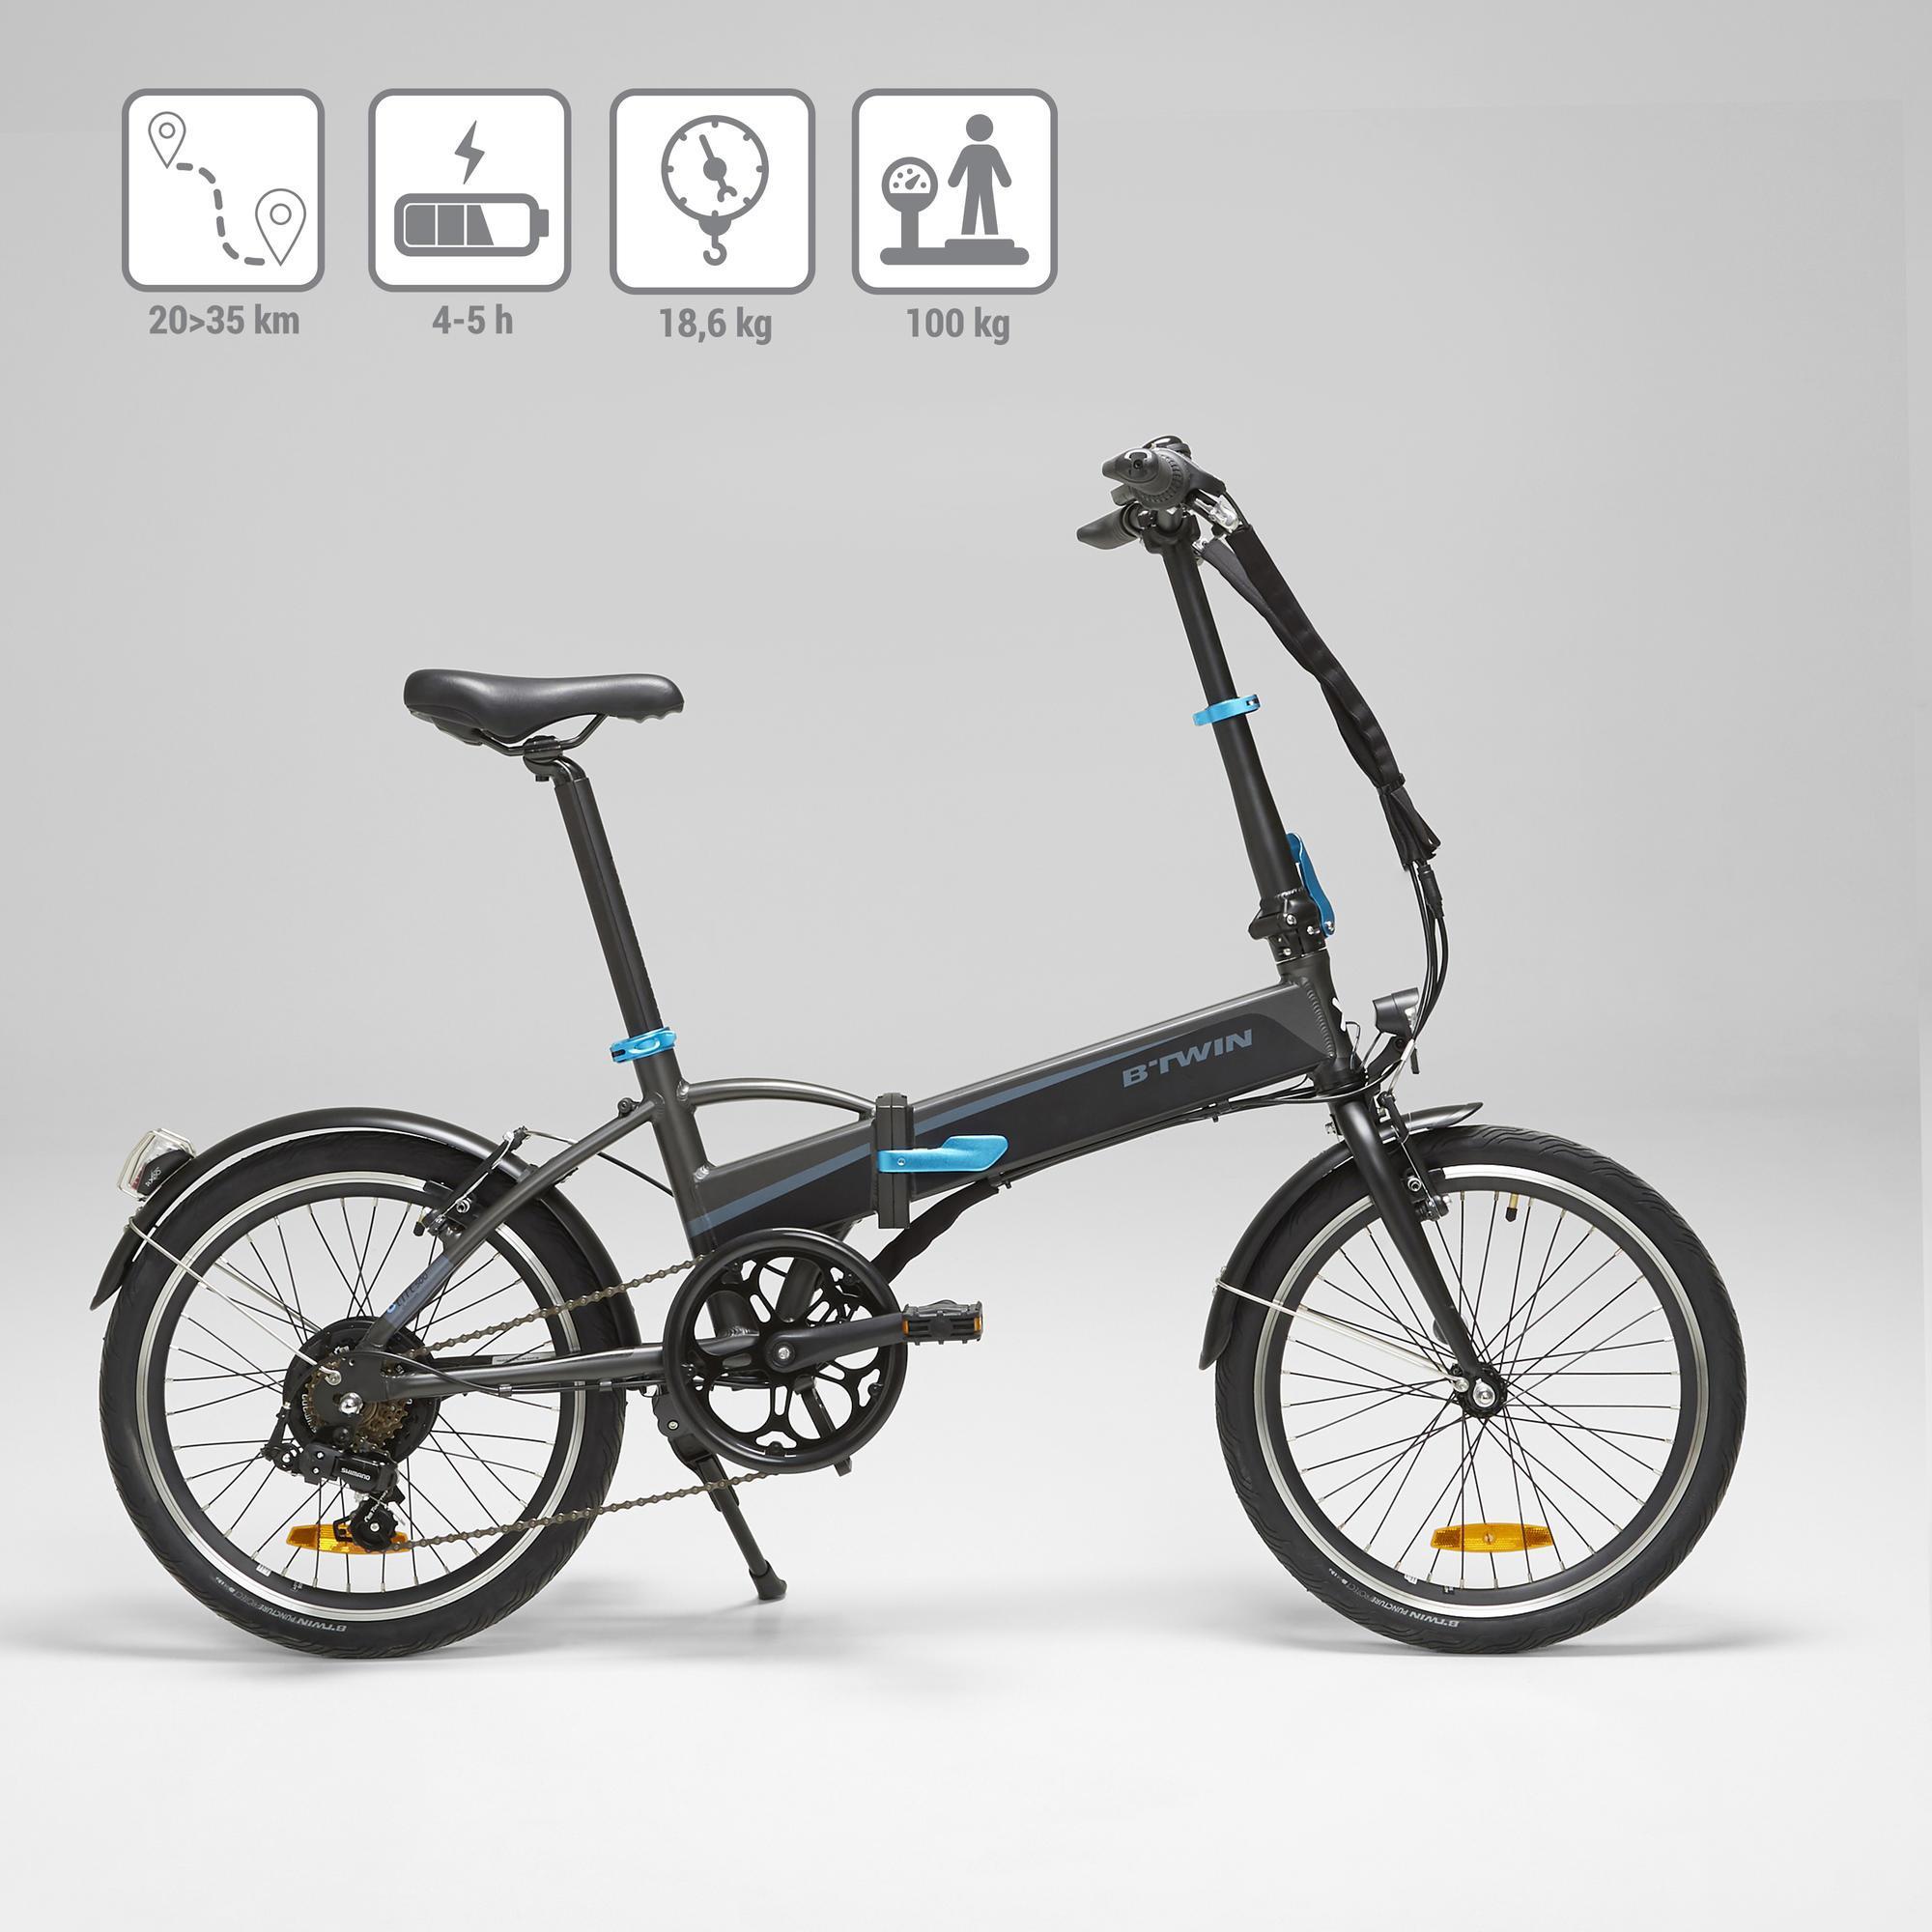 ebay motorized bicycle kit